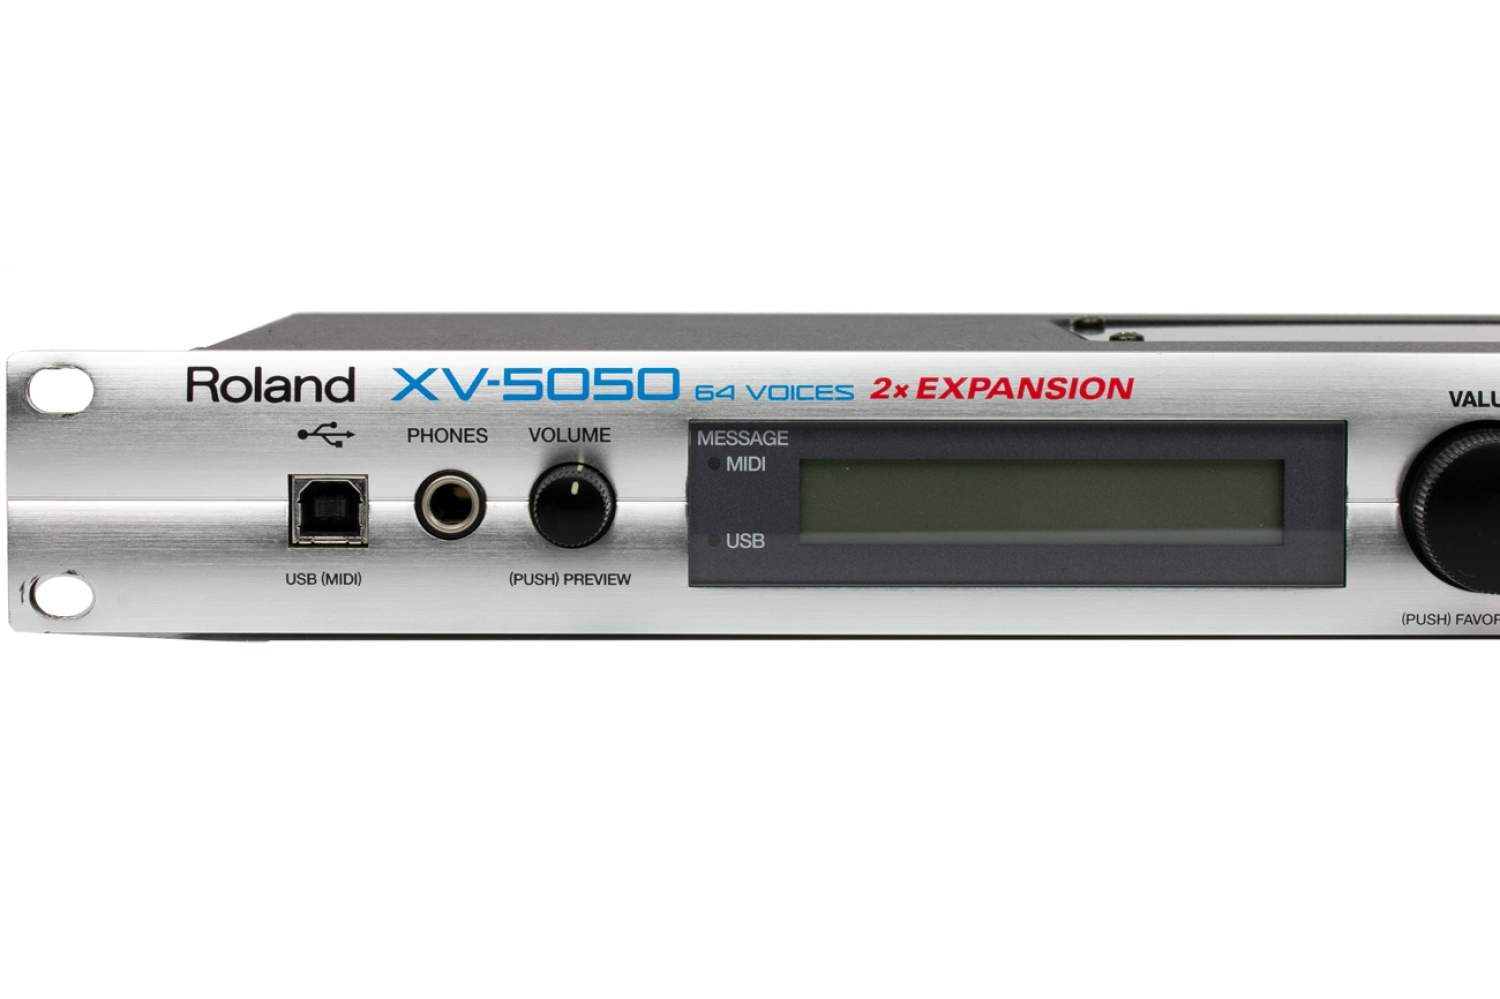 Roland XV-5050 Synthesizer gebraucht kaufen mit Garantie